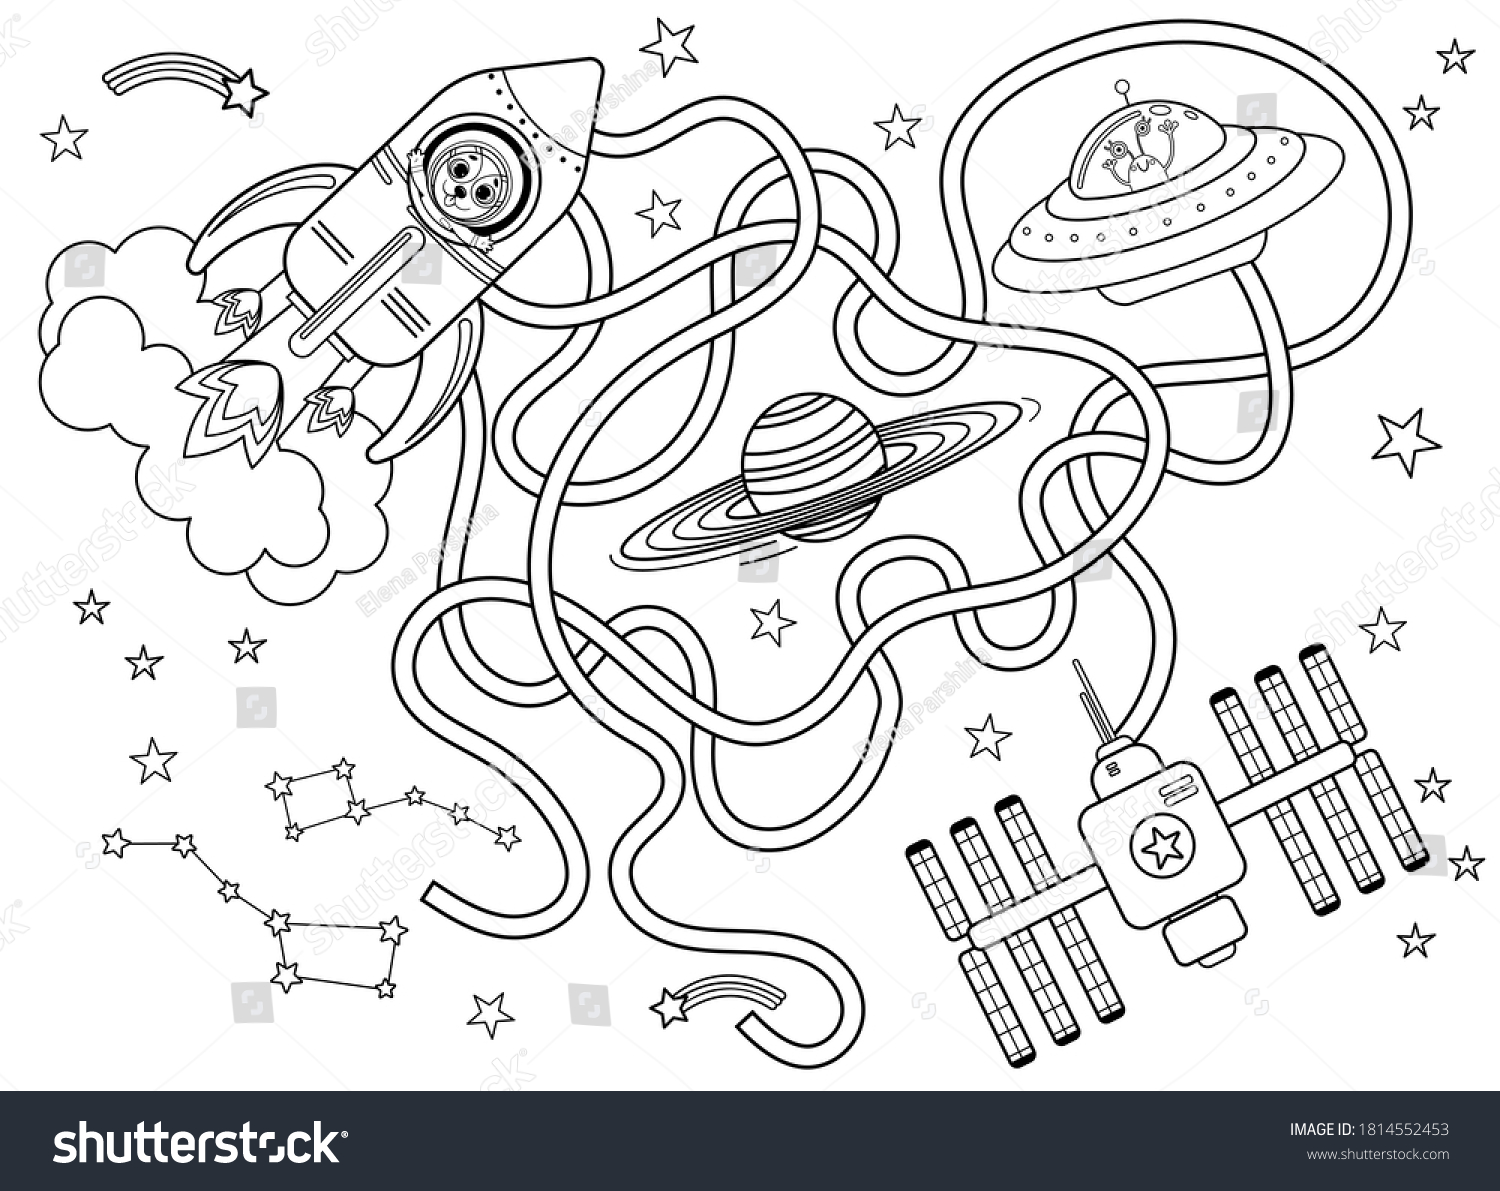 Лабиринт к кораблю космическому черно белый